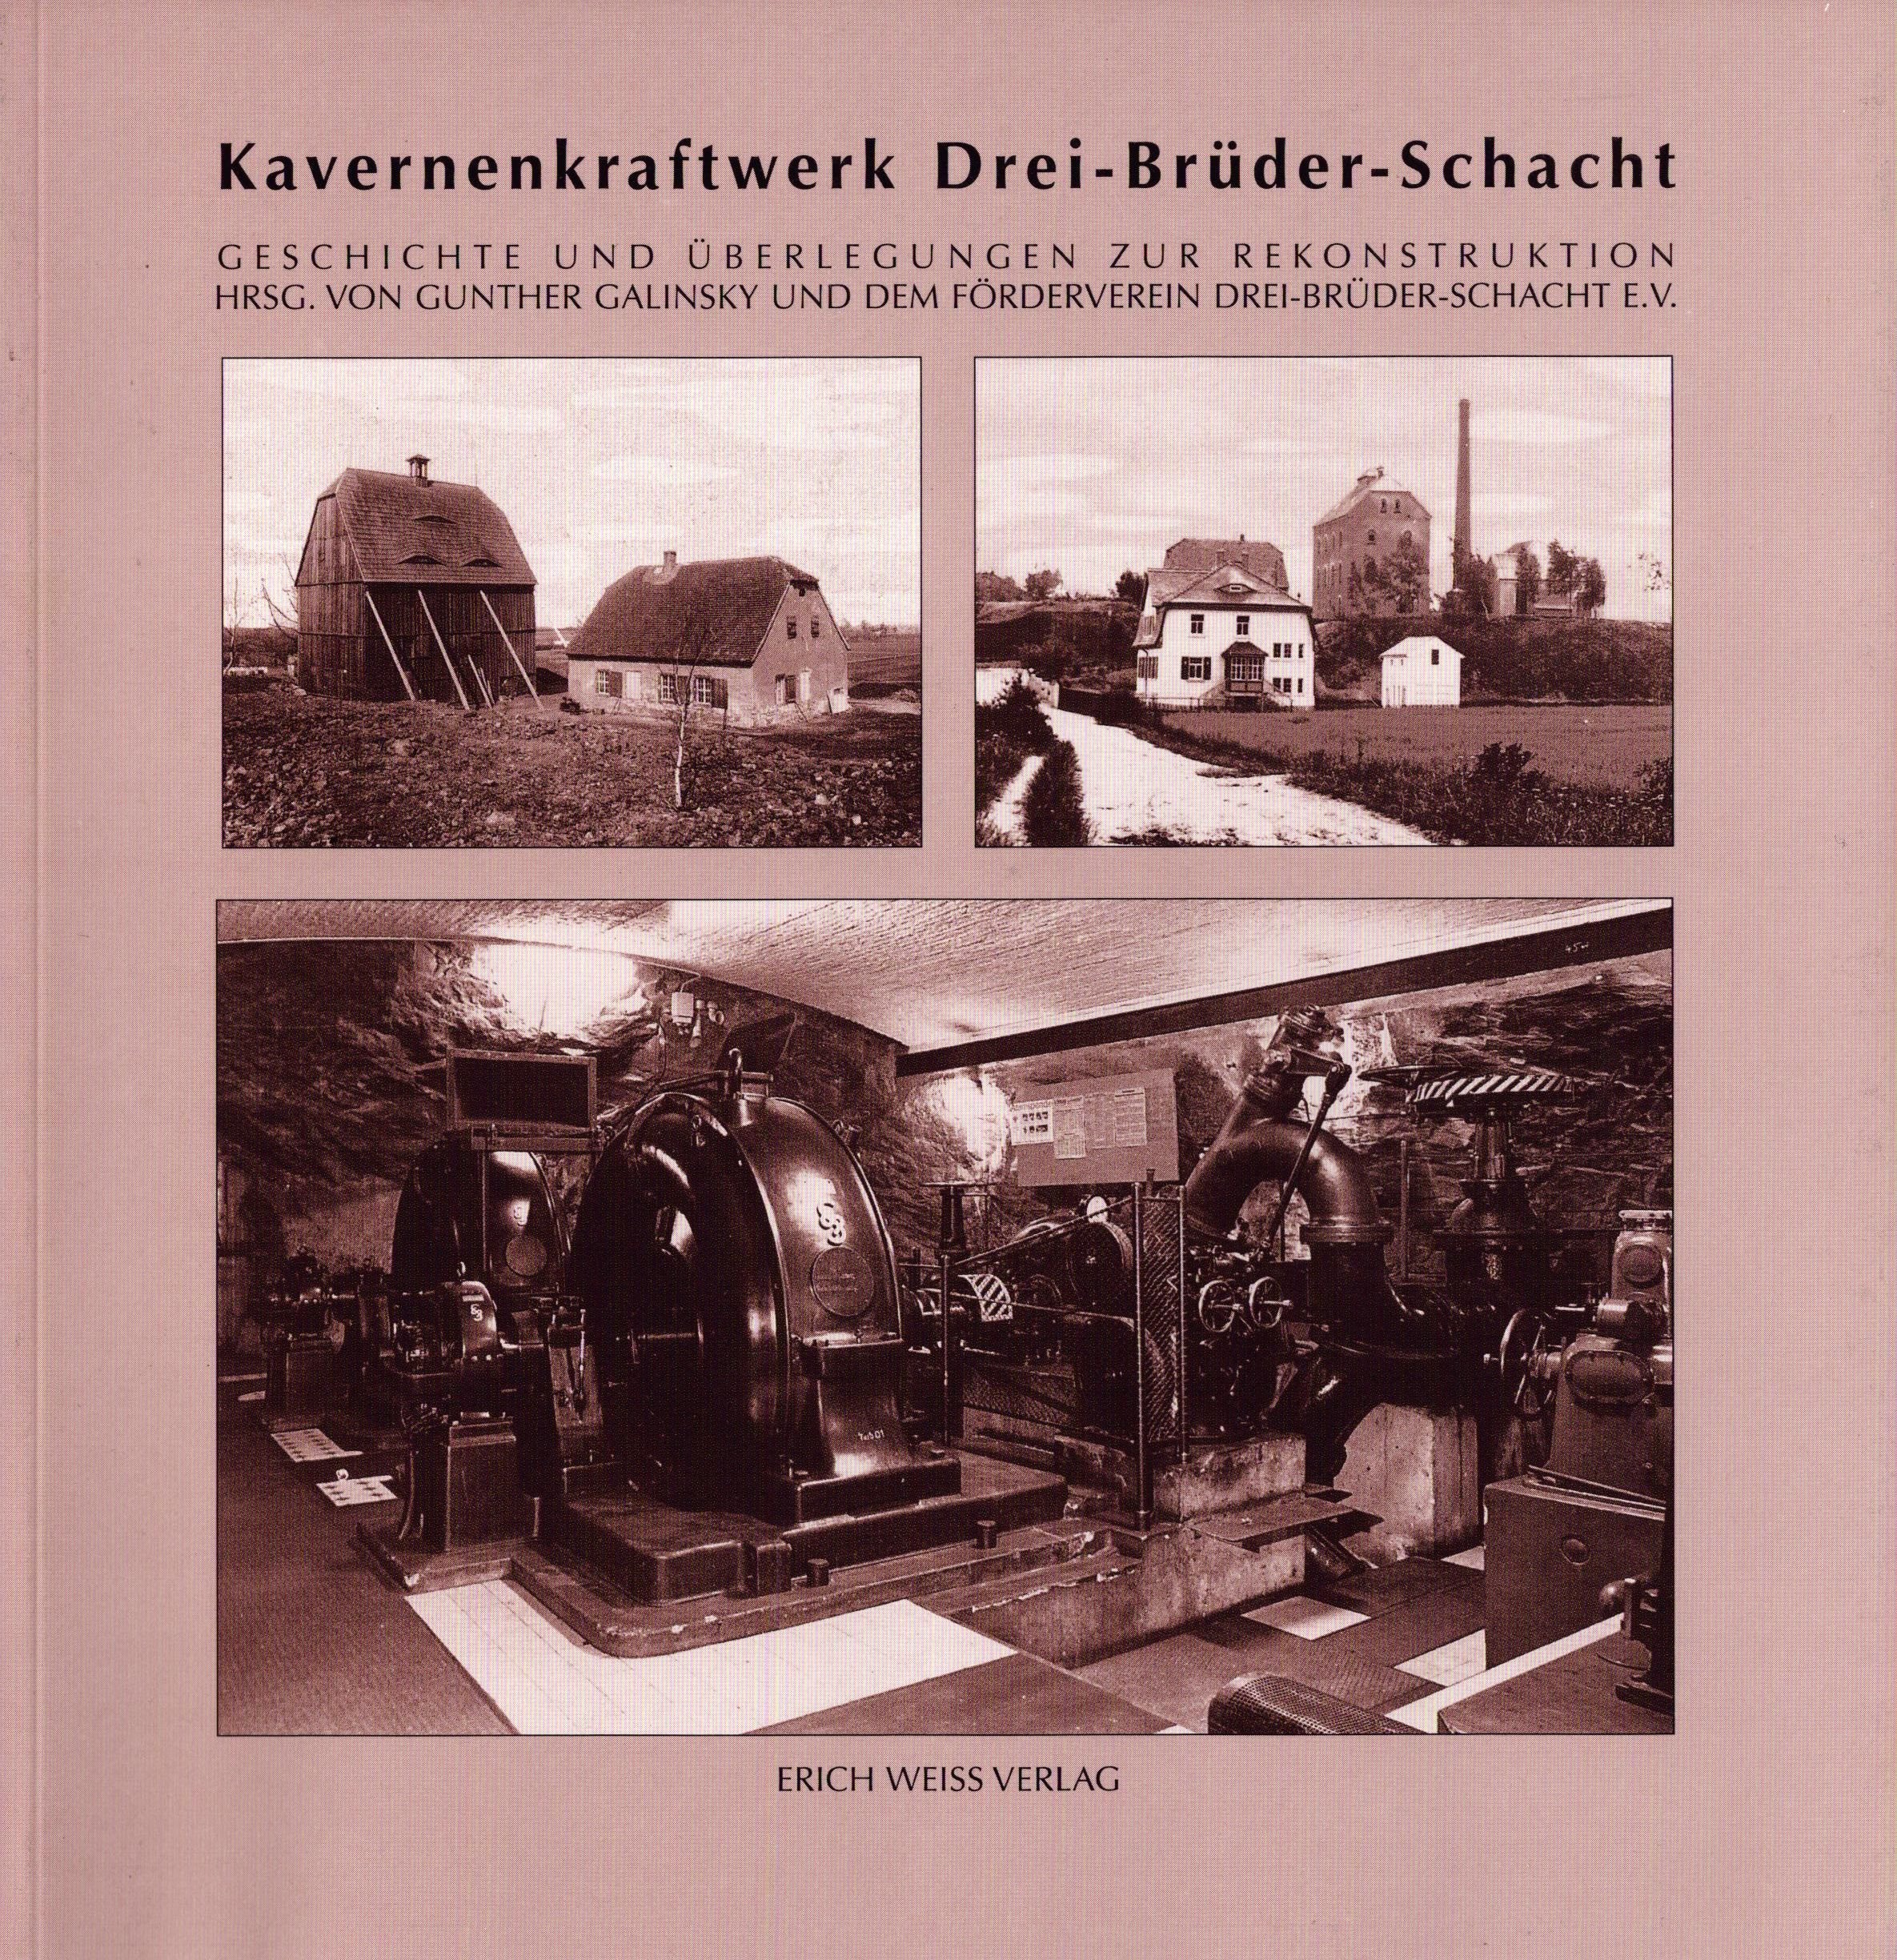 Kavernenkraftwerk Drei-Brüder-Schacht (Archiv SAXONIA-FREIBERG-STIFTUNG CC BY-NC-SA)